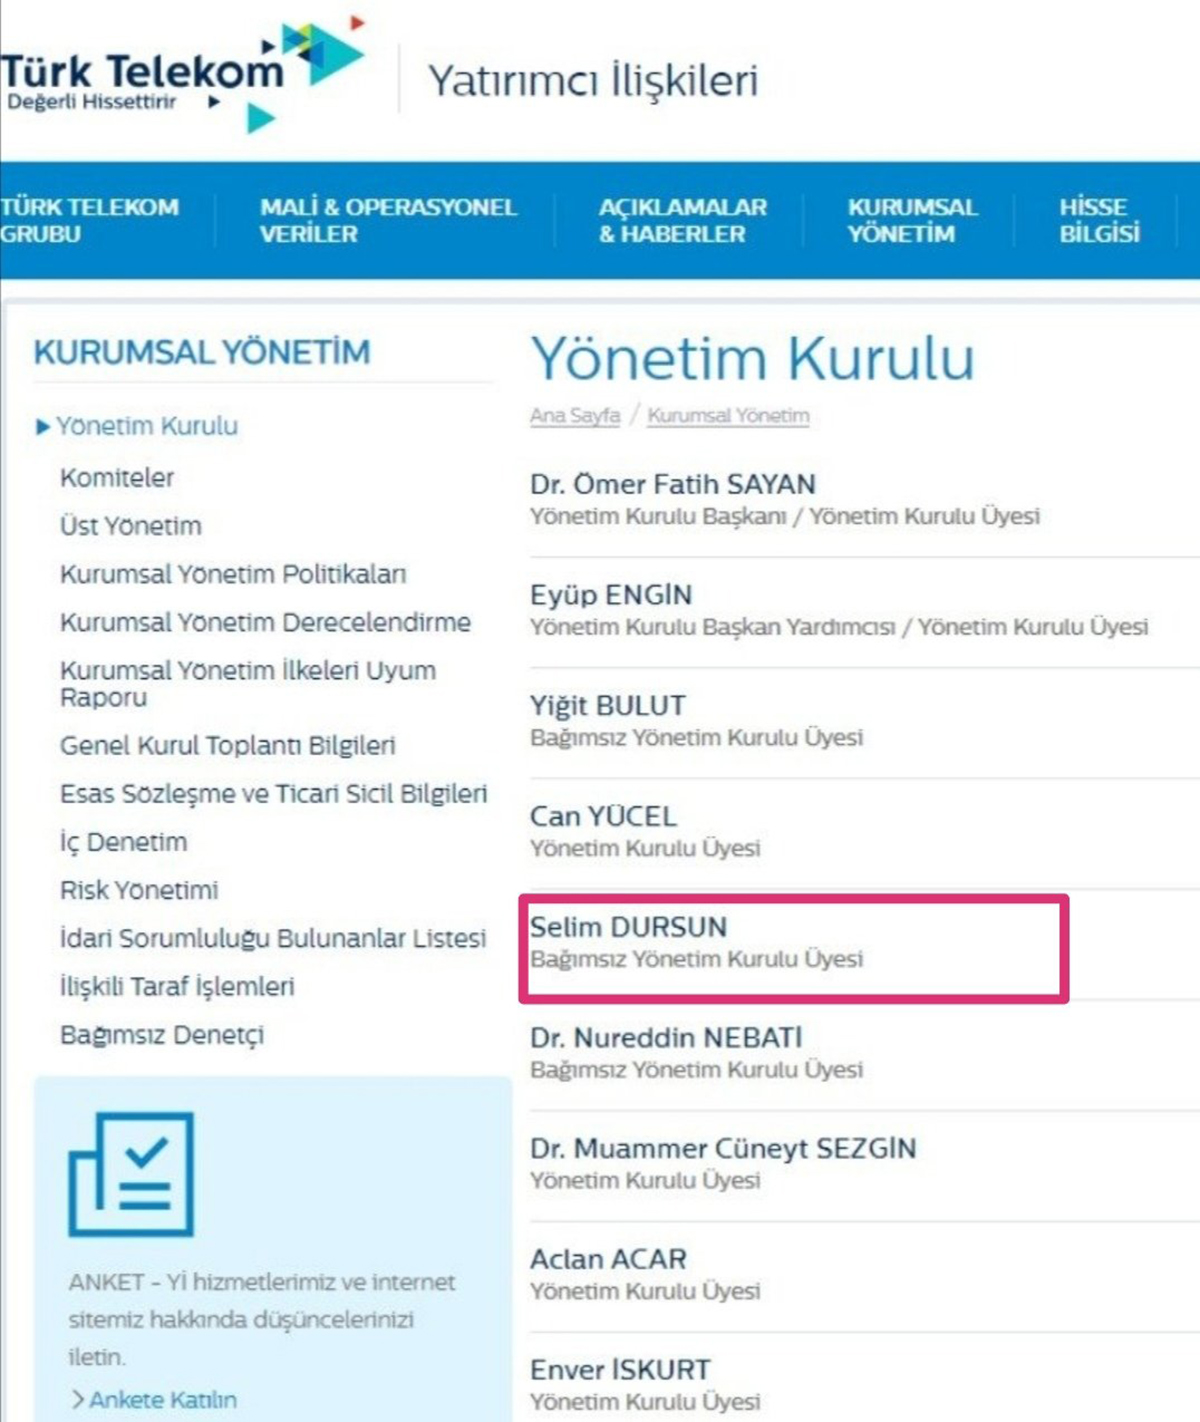 turk-telekom.jpg